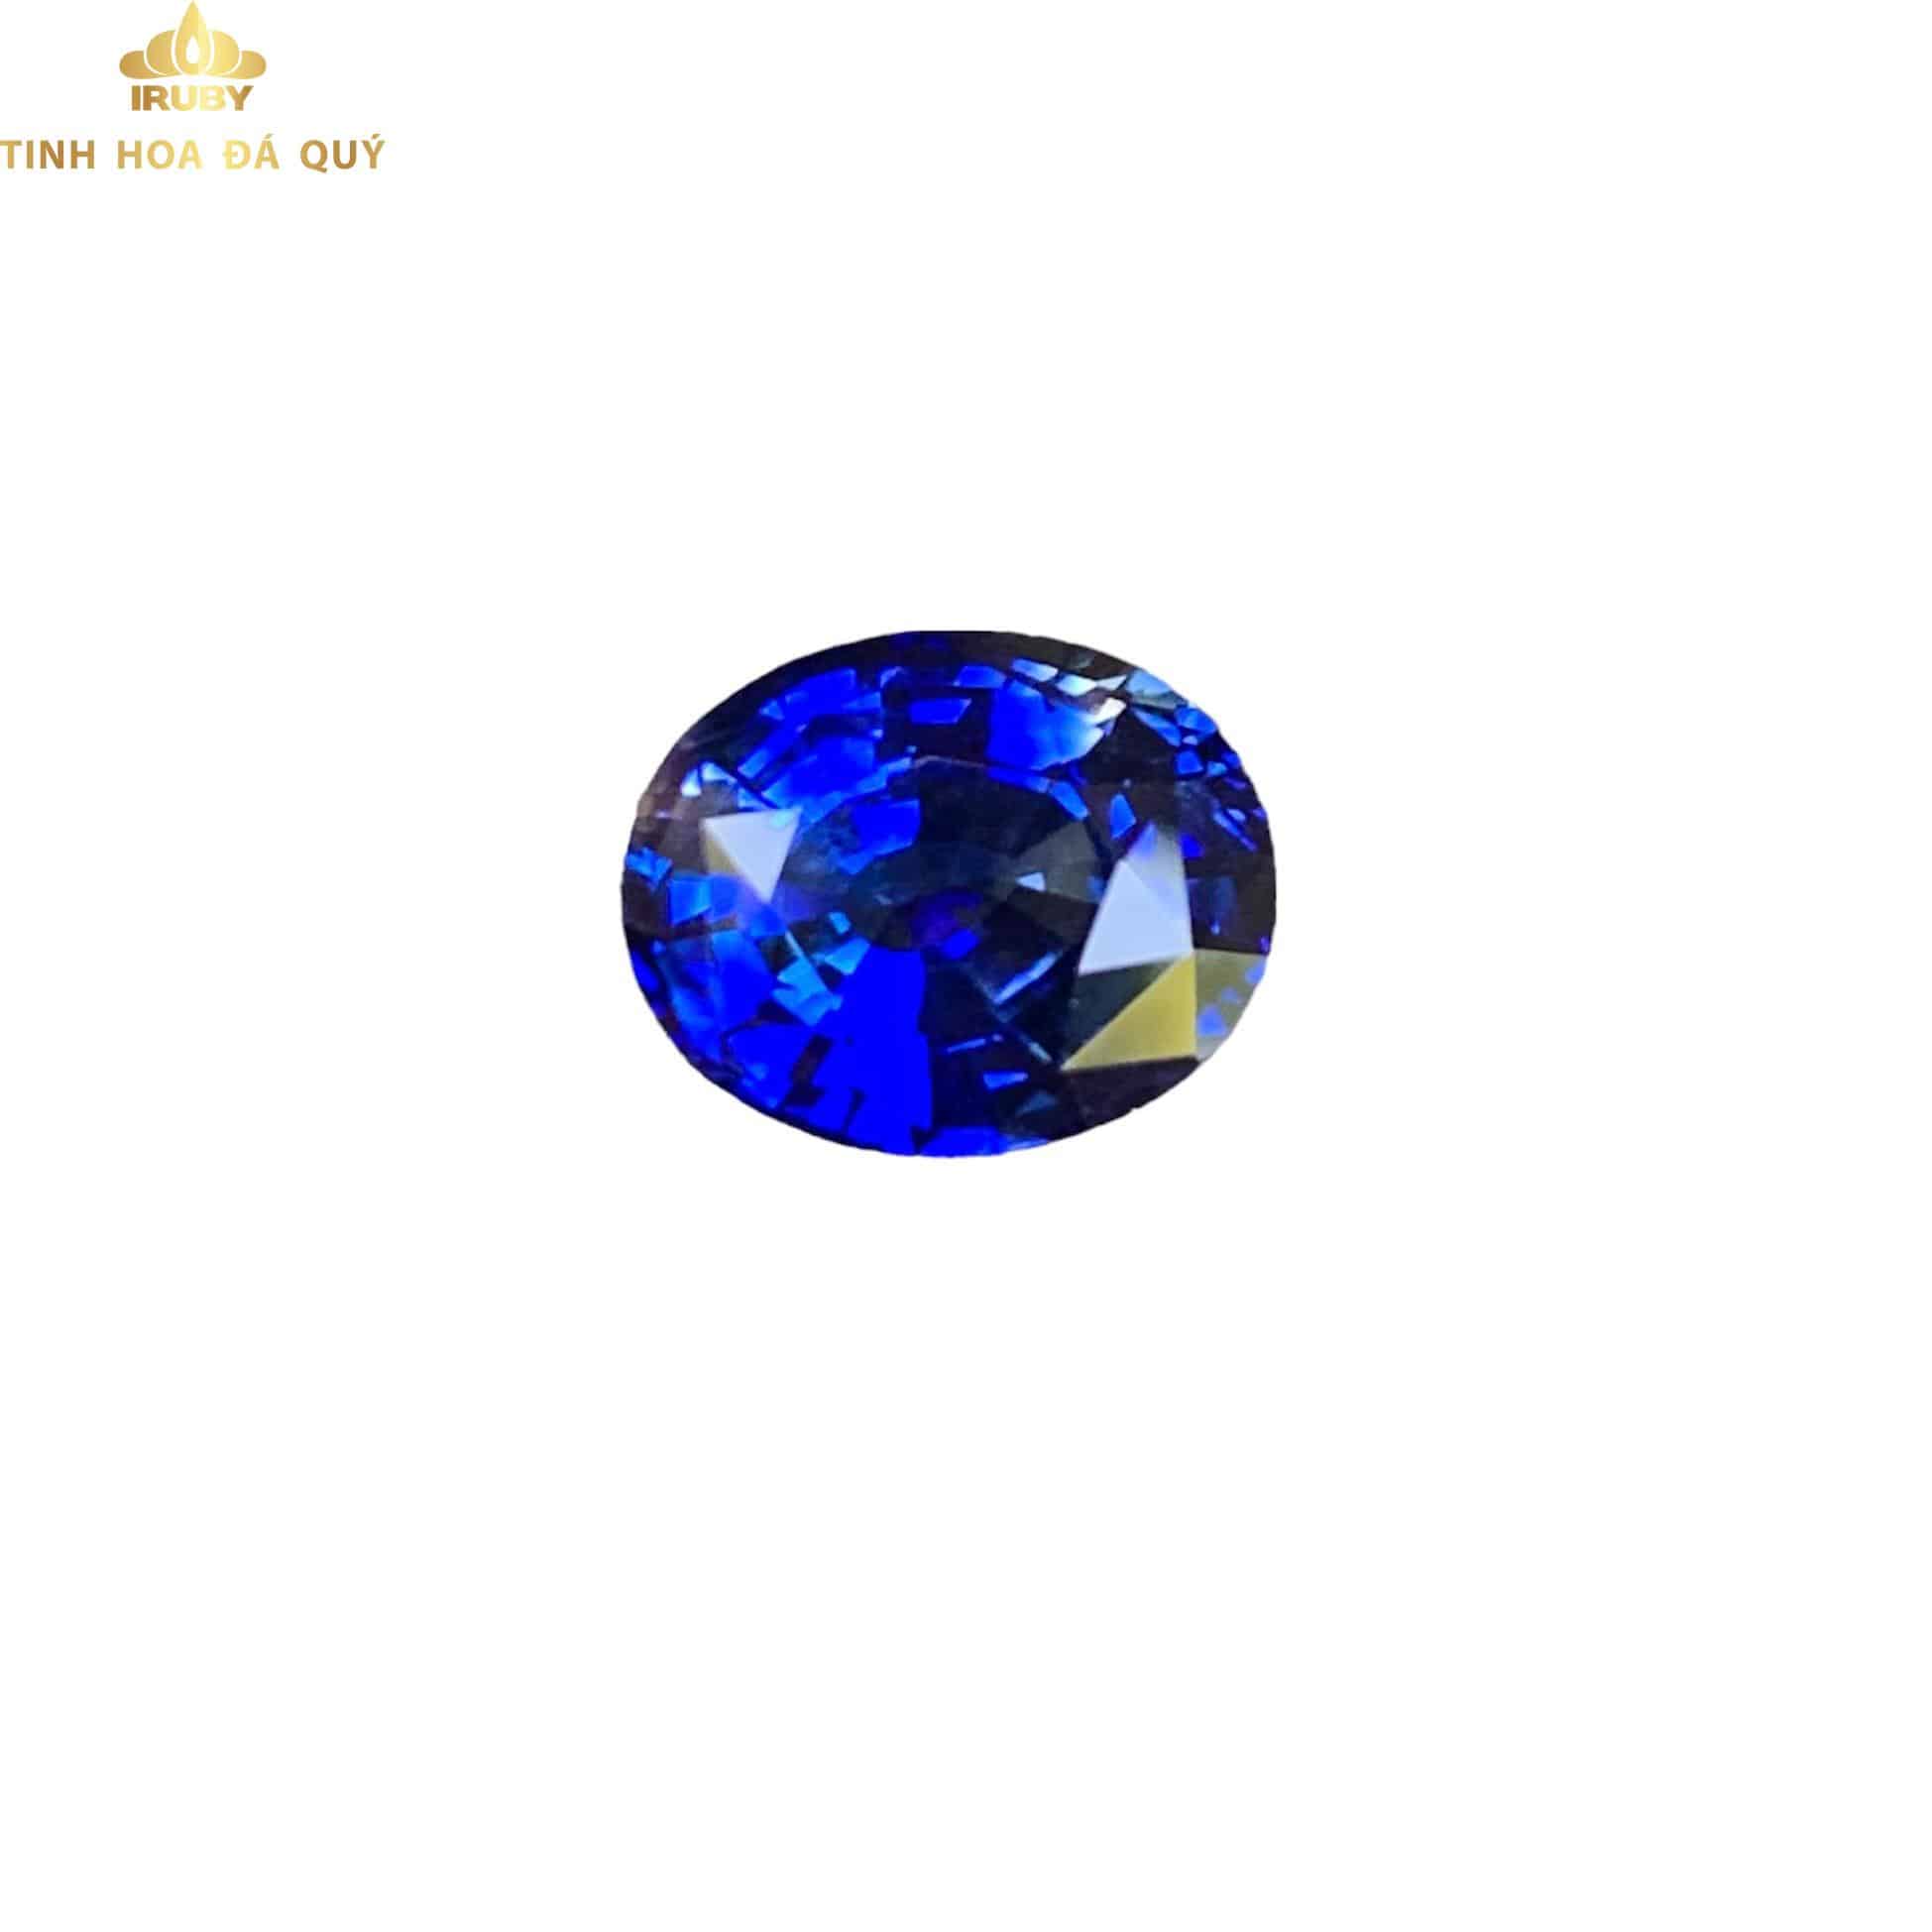 Viên Sapphire xanh lam hoàng gia 3,19ct - IRBS 2211319